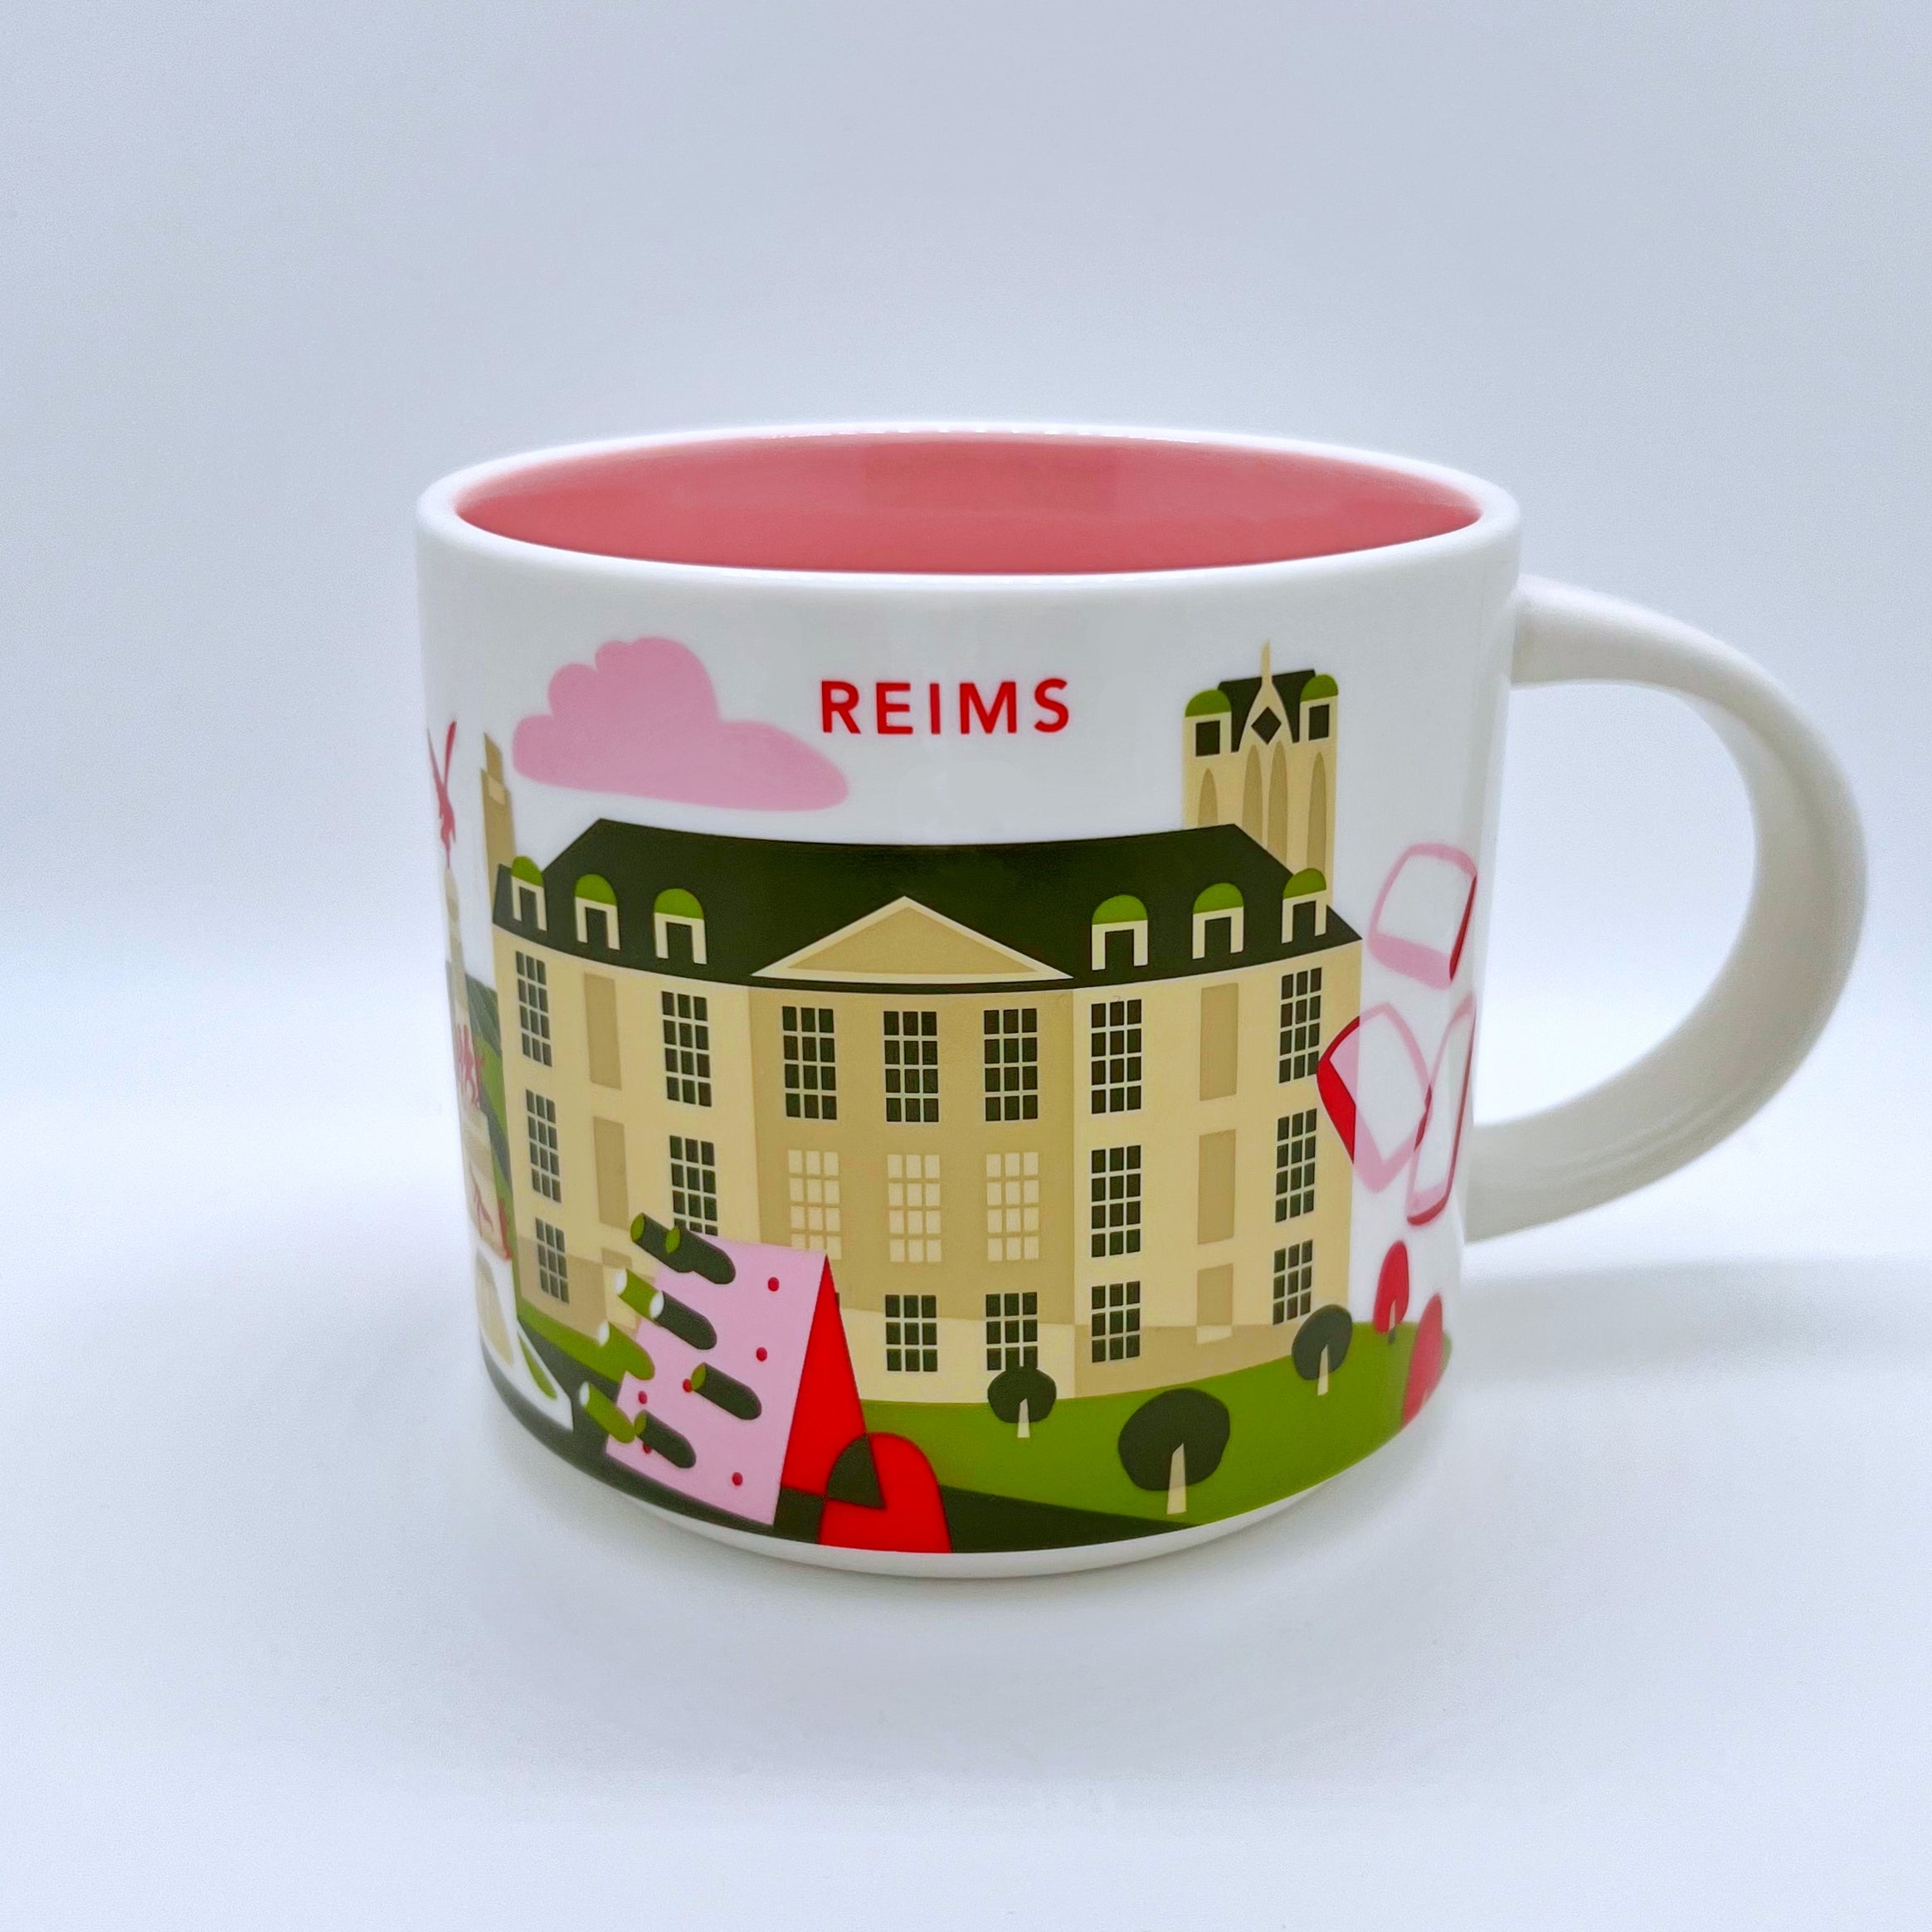 Reims City Kaffee Tasse